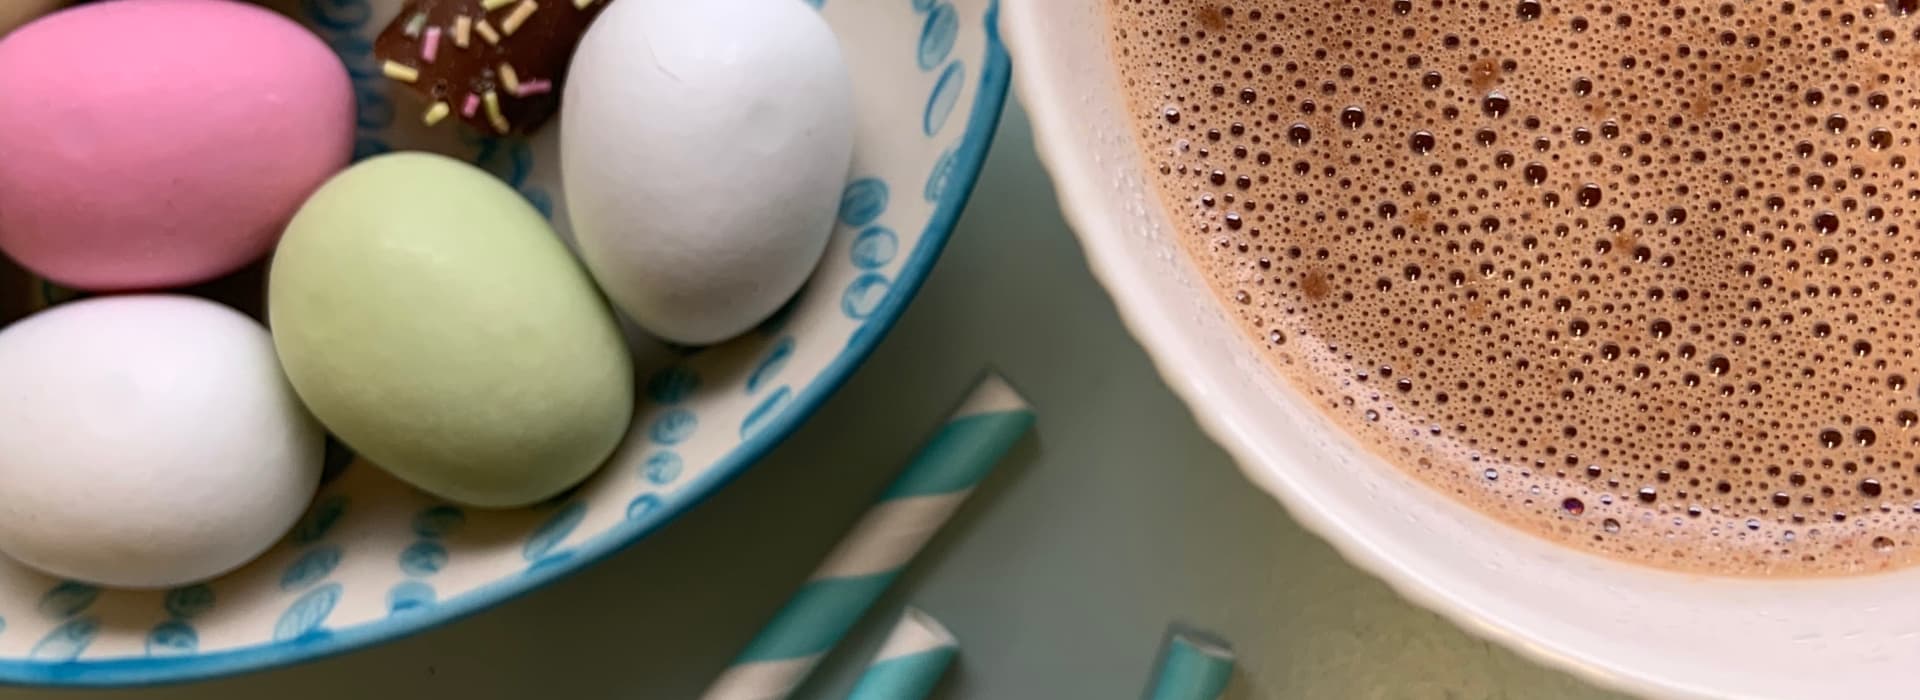 Varm sjokolade med HaPå og appelsin til påske. Søt og deilig kakao som varmer og gir energi etter skituren!